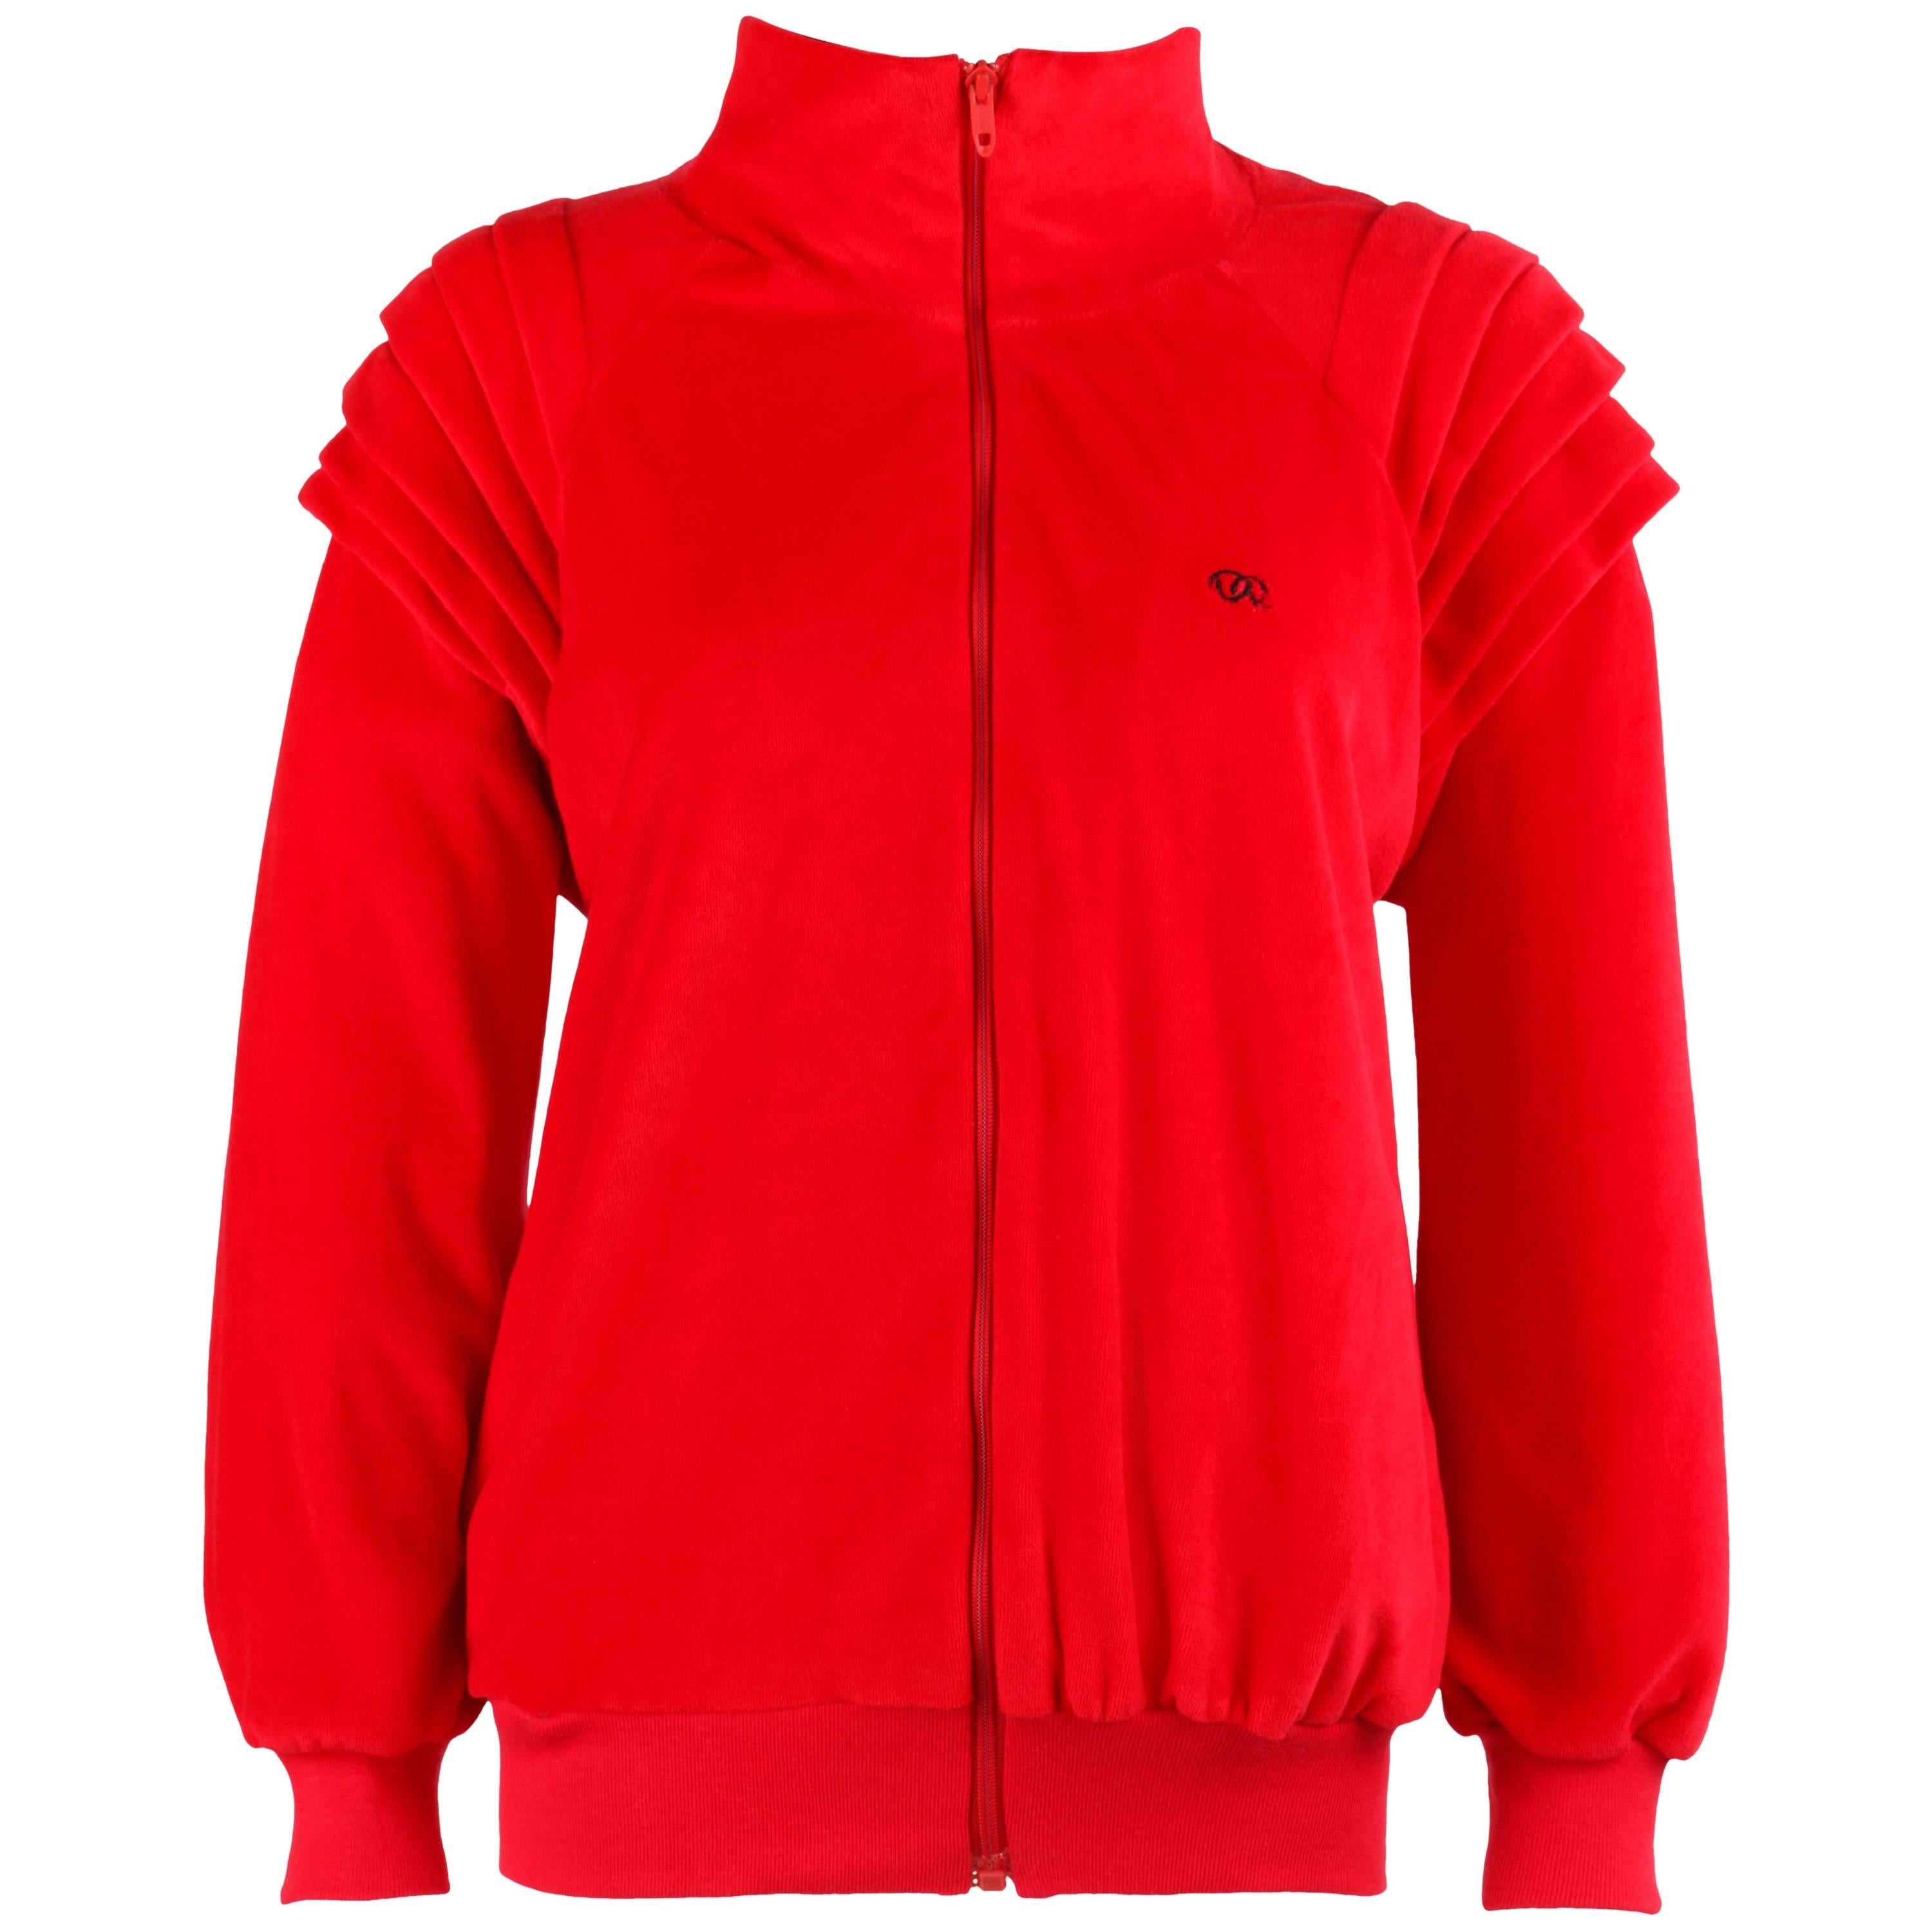 OSCAR DE LA RENTA Activewear c.1980's Red Velour Zip Up Sweater Track Jacket NOS